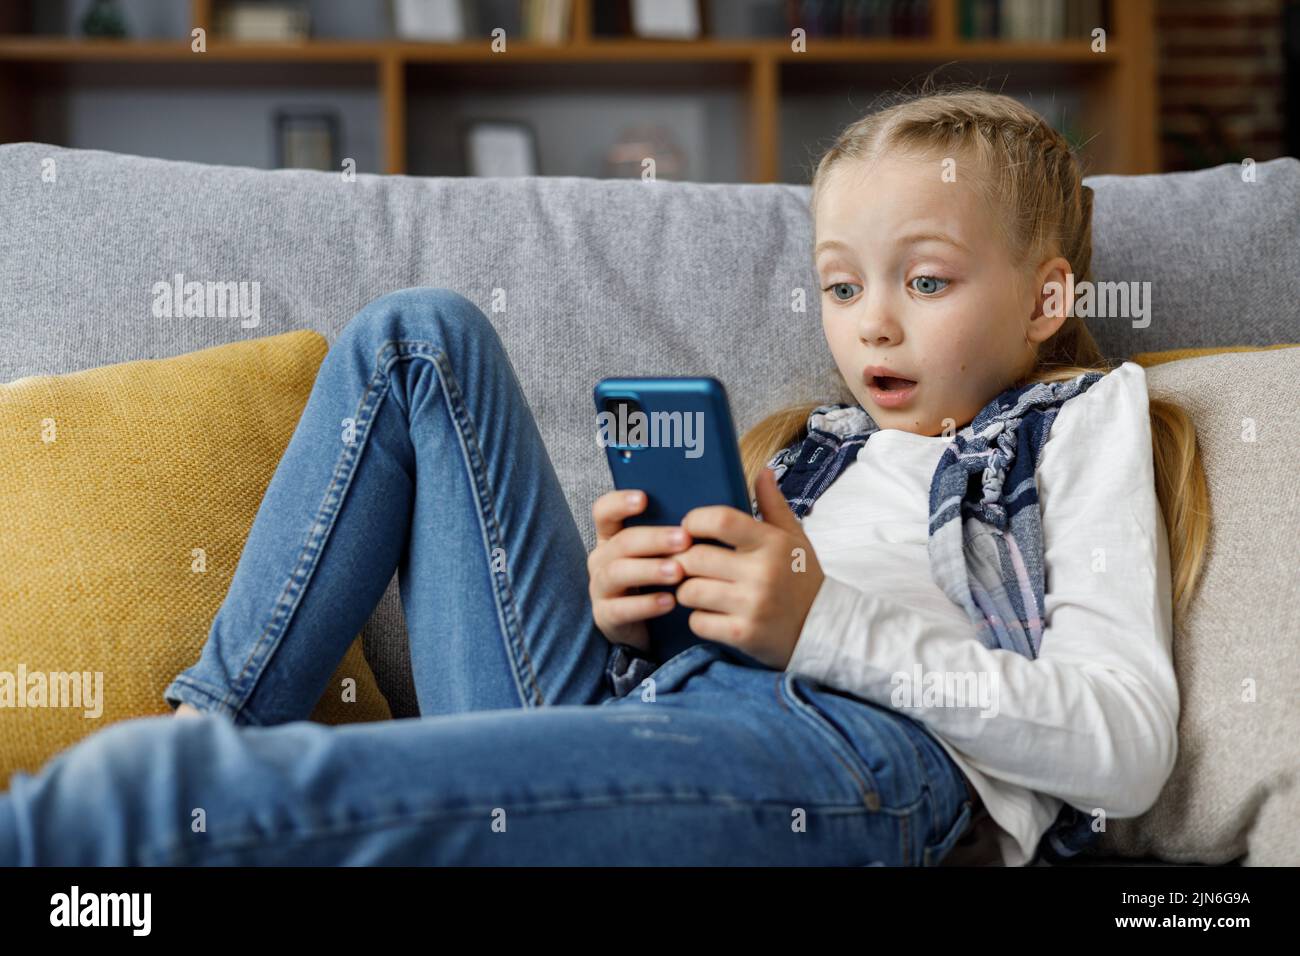 Sorprendida pequeña chica linda sosteniendo smartphone y descansando en el sofá en casa. Pasar tiempo en las redes sociales, mensajes de texto, navegar por Internet Foto de stock